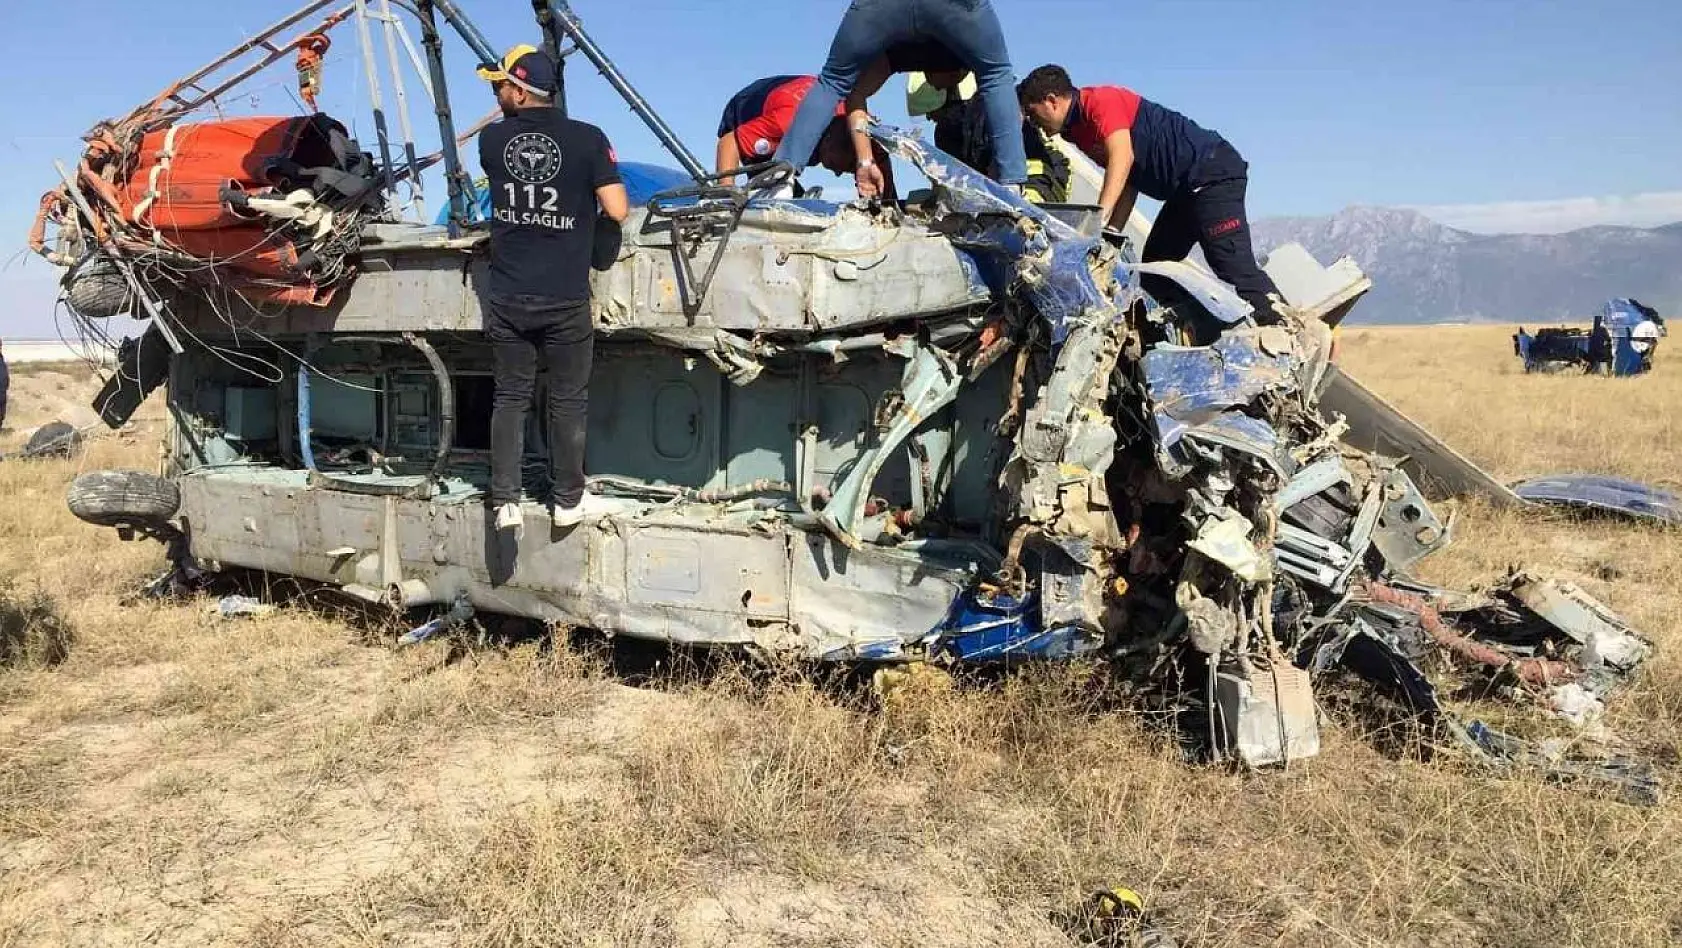 Marmaris'teki yangına destek için giden helikopter düştü: 2 ölü, 5 yaralı